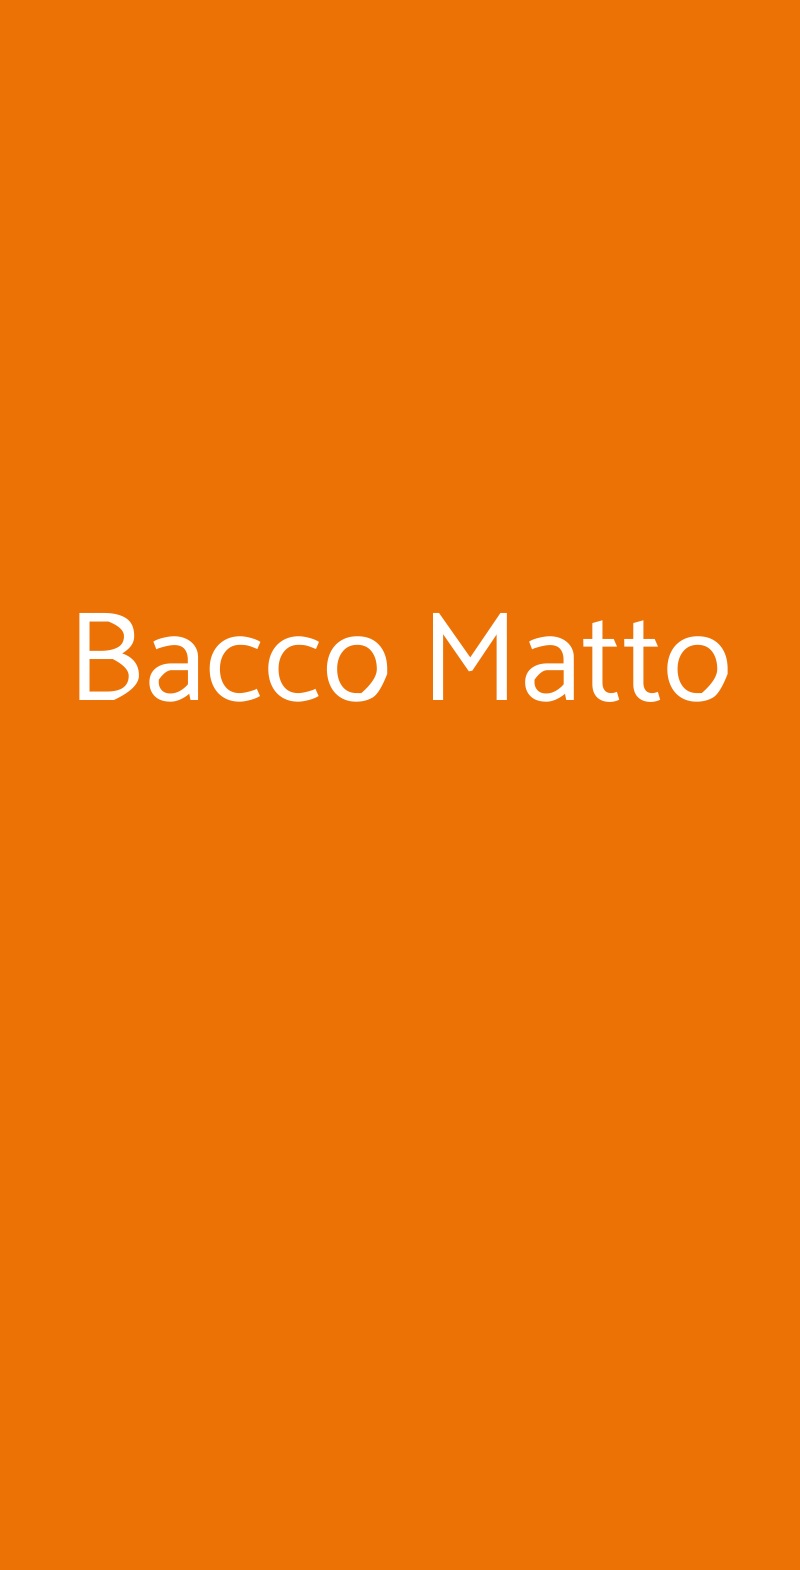 Bacco Matto Bergamo menù 1 pagina